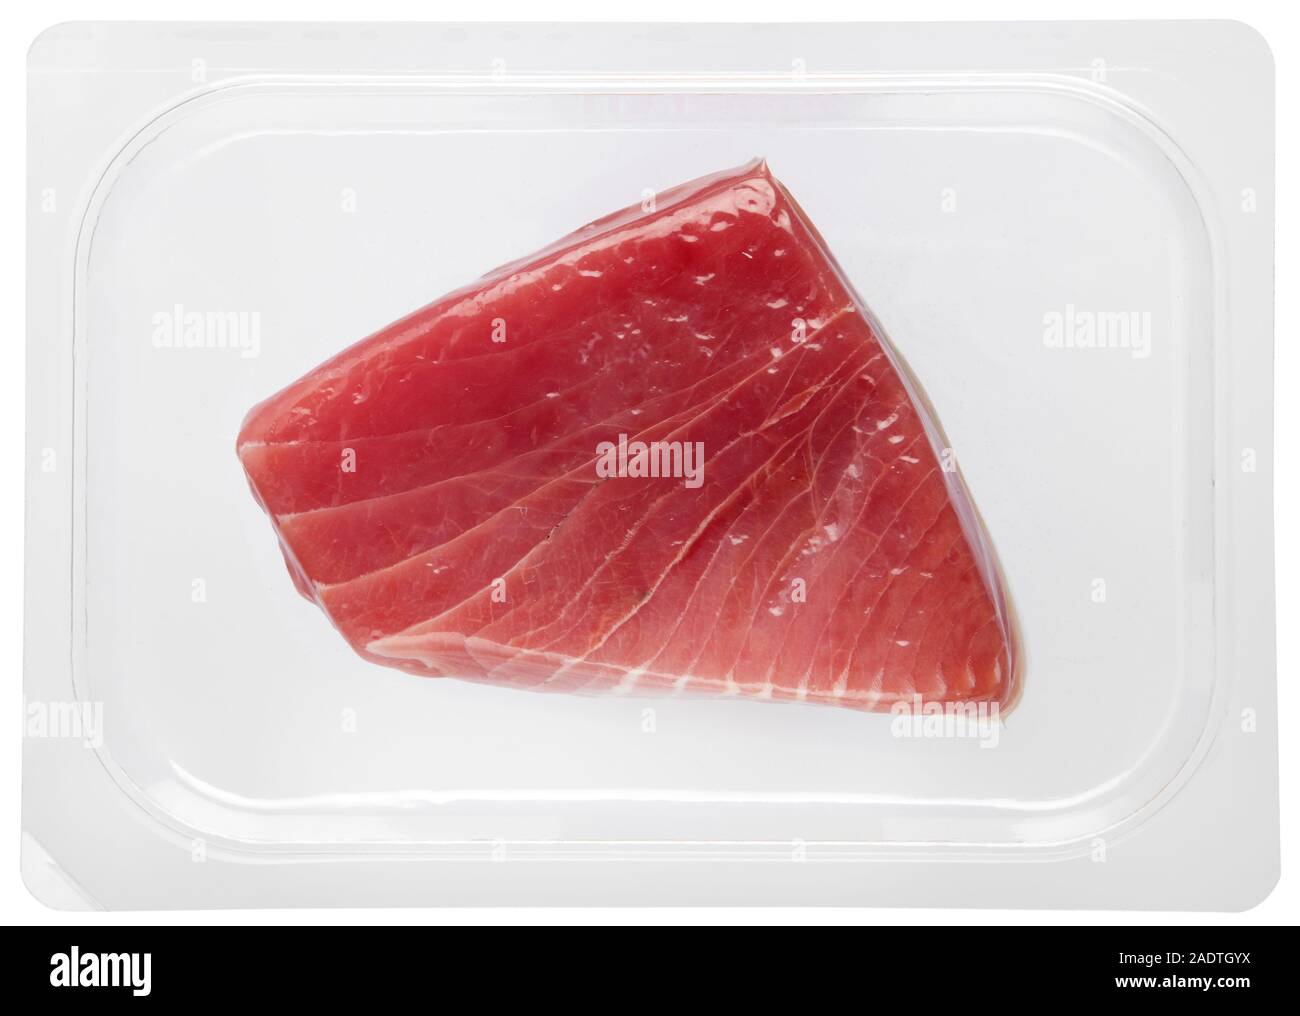 Steak de thon frais sain emballé sous vide en plastique sur un fond blanc dans une vue en gros dans un concept d'alimentation et de nutrition Banque D'Images